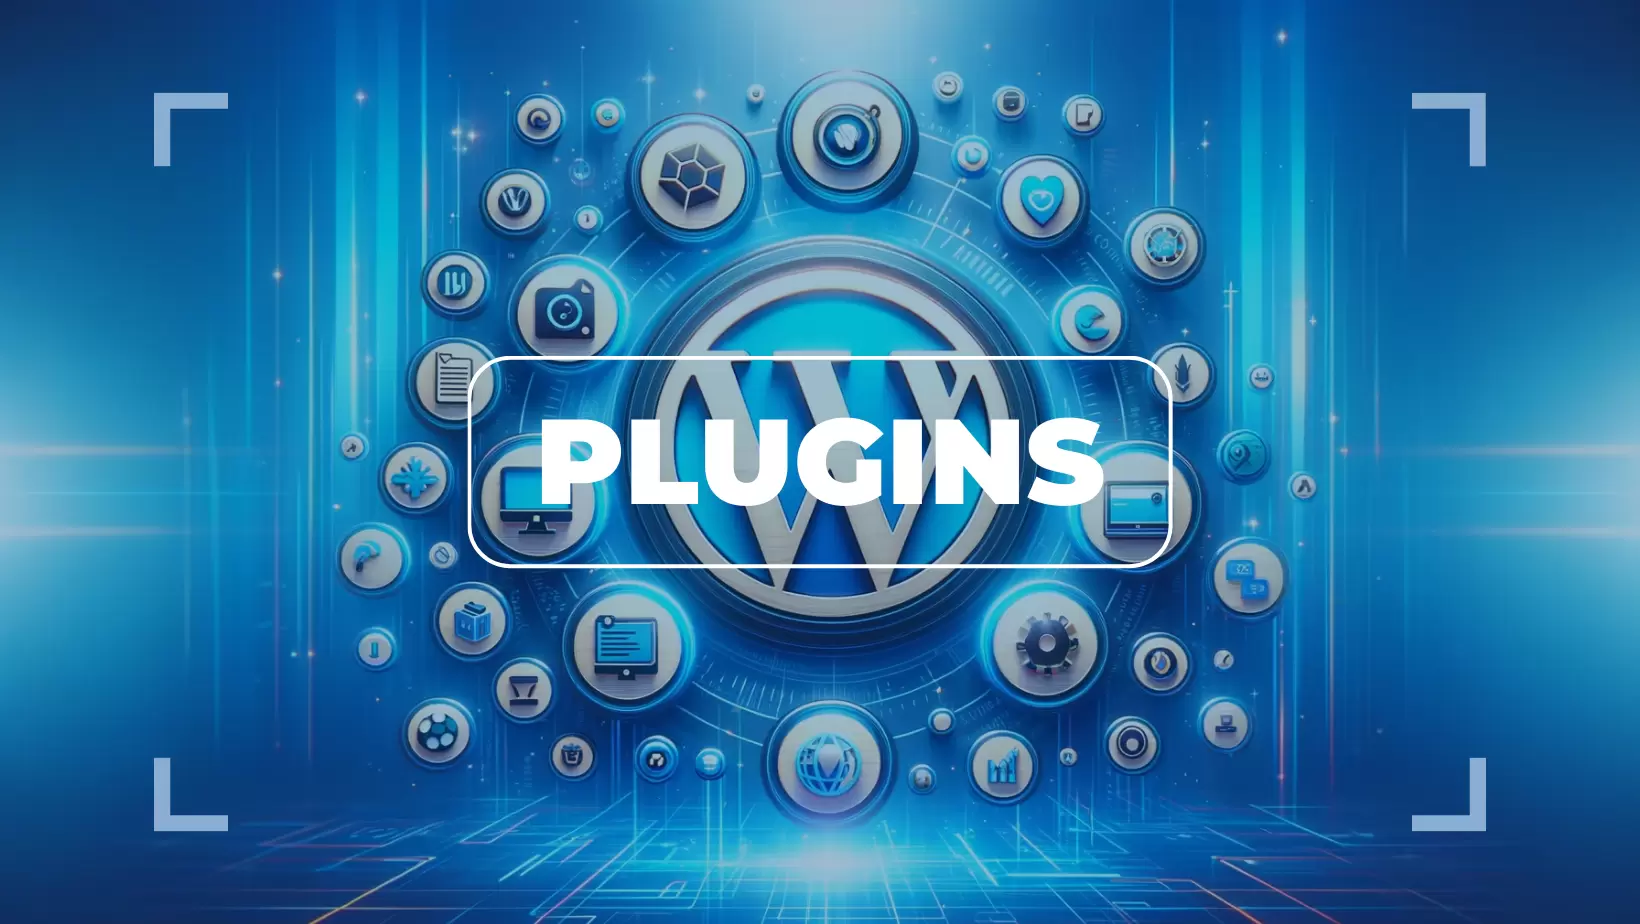 Les meilleurs plugins WordPress à installer sur un nouveau blog